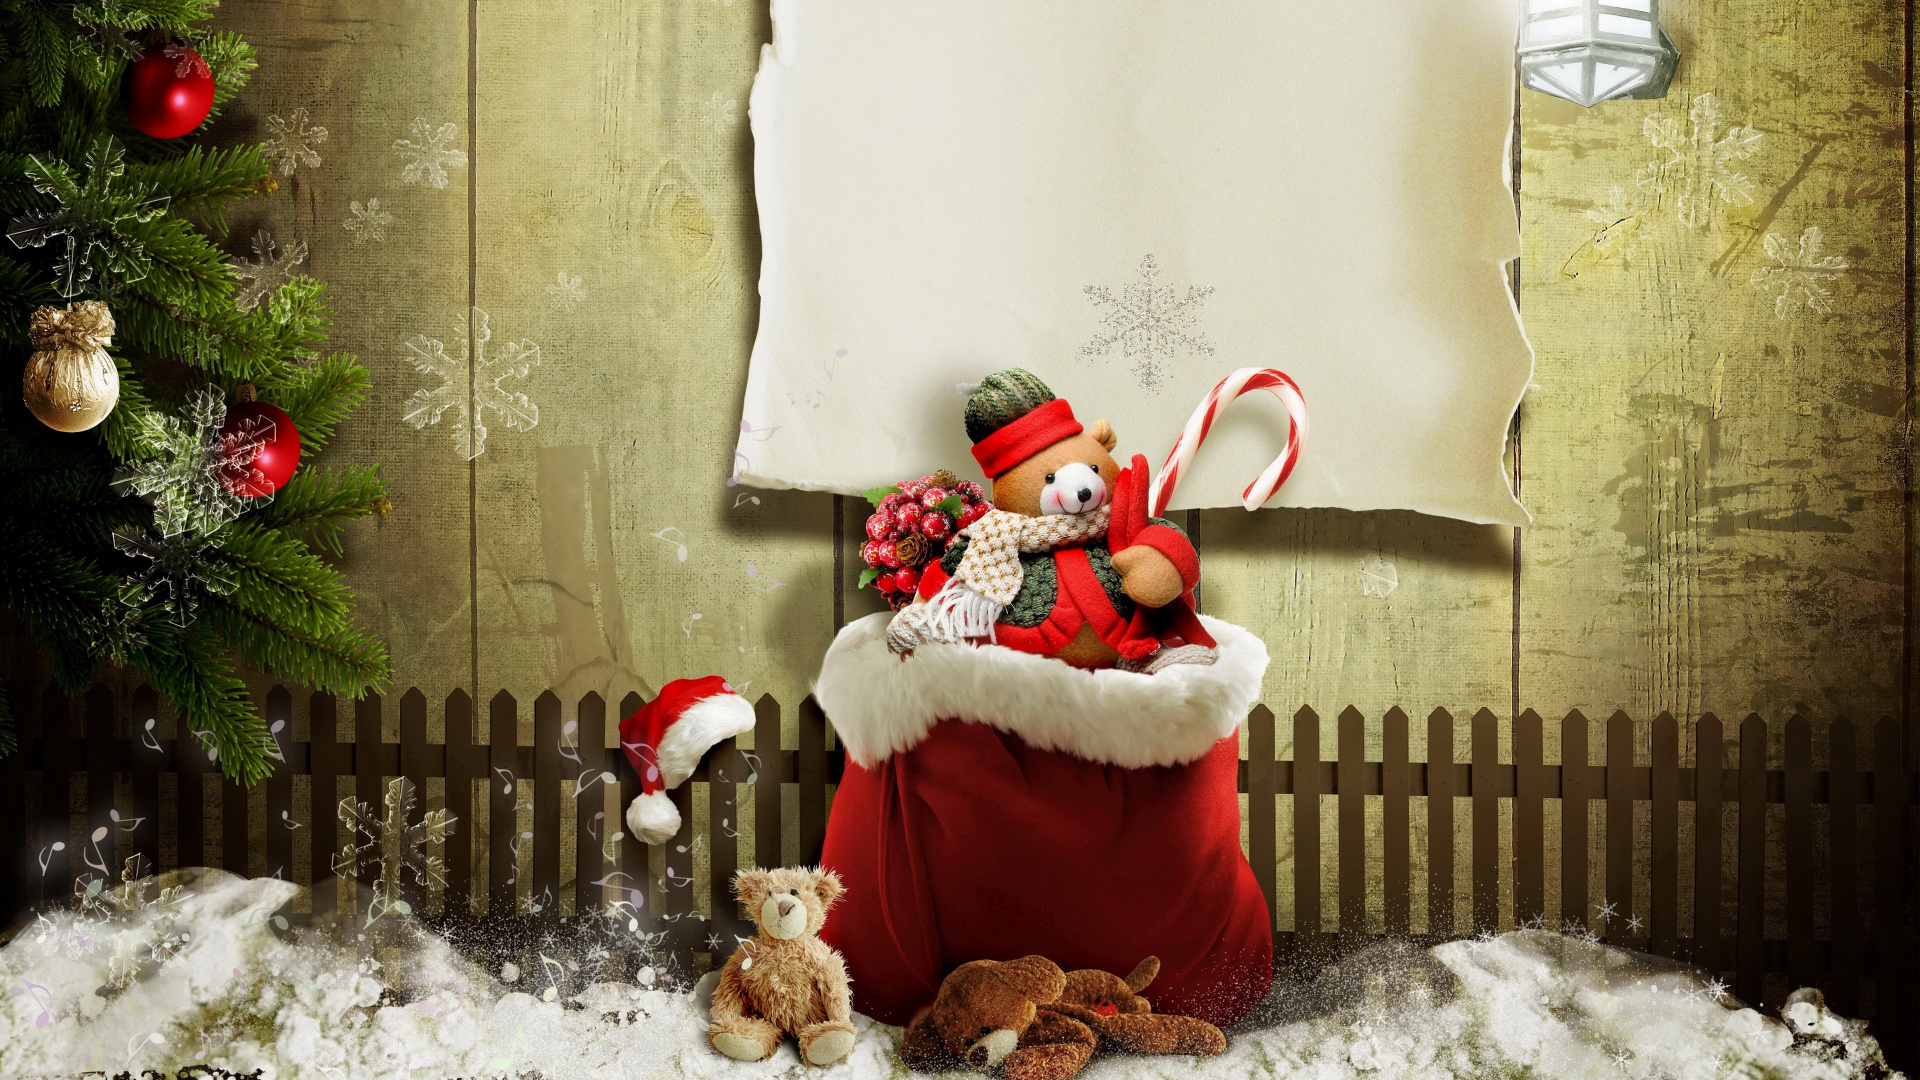 Weihnachten, Weihnachtsmann, Weihnachtsgeschenk, Christmas Ornament, Winter. Wallpaper in 1920x1080 Resolution